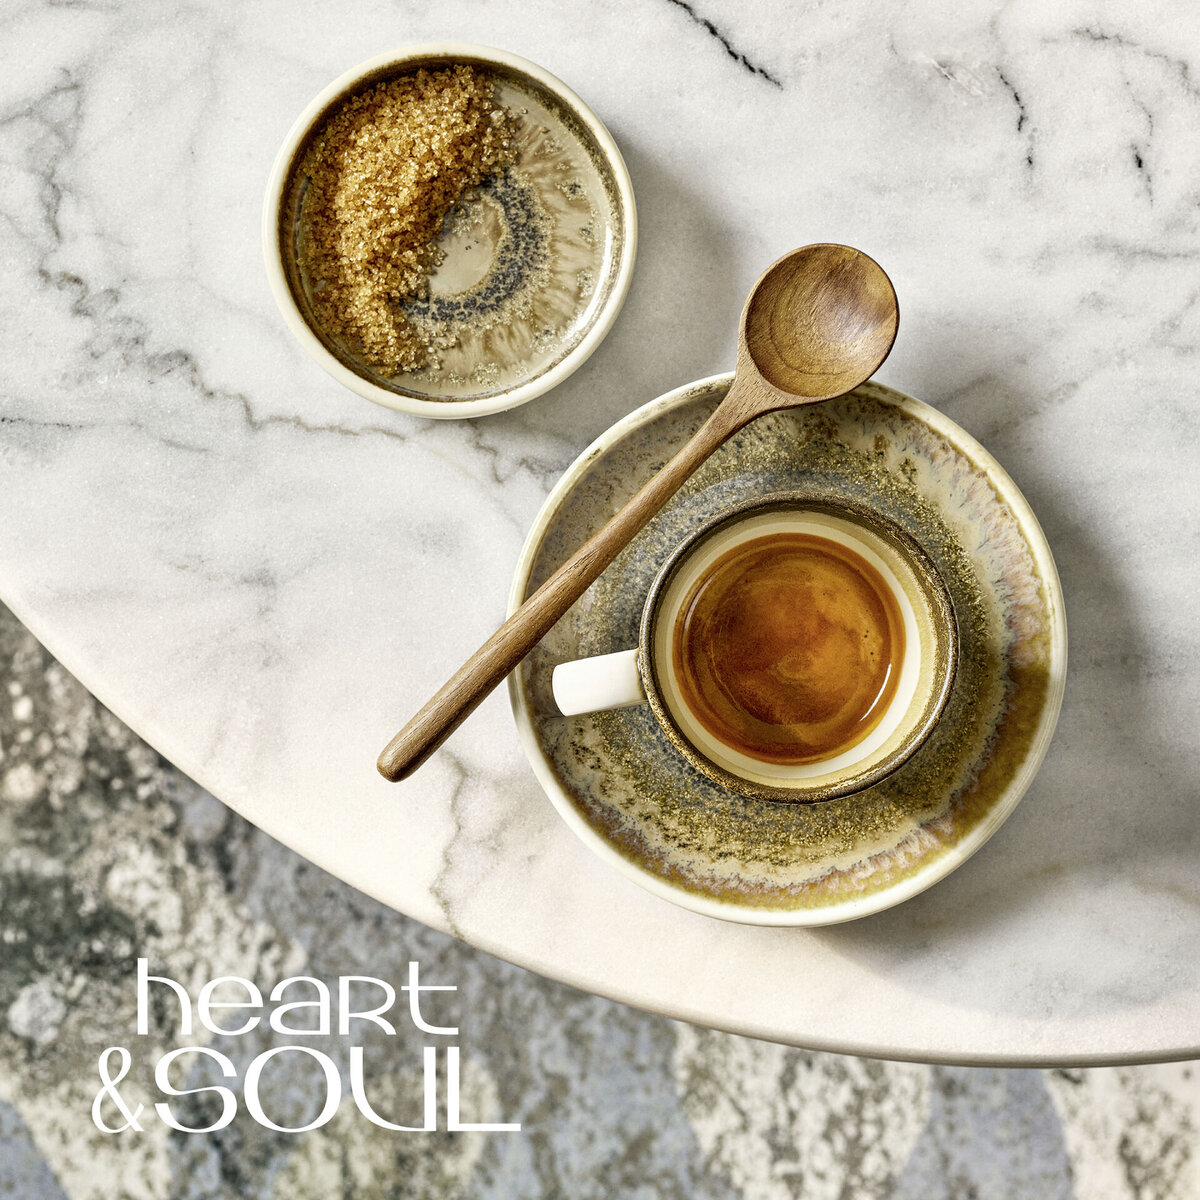 "Heart & Soul" Cumin Tasse obere Kaffee/Cappuccino (1)